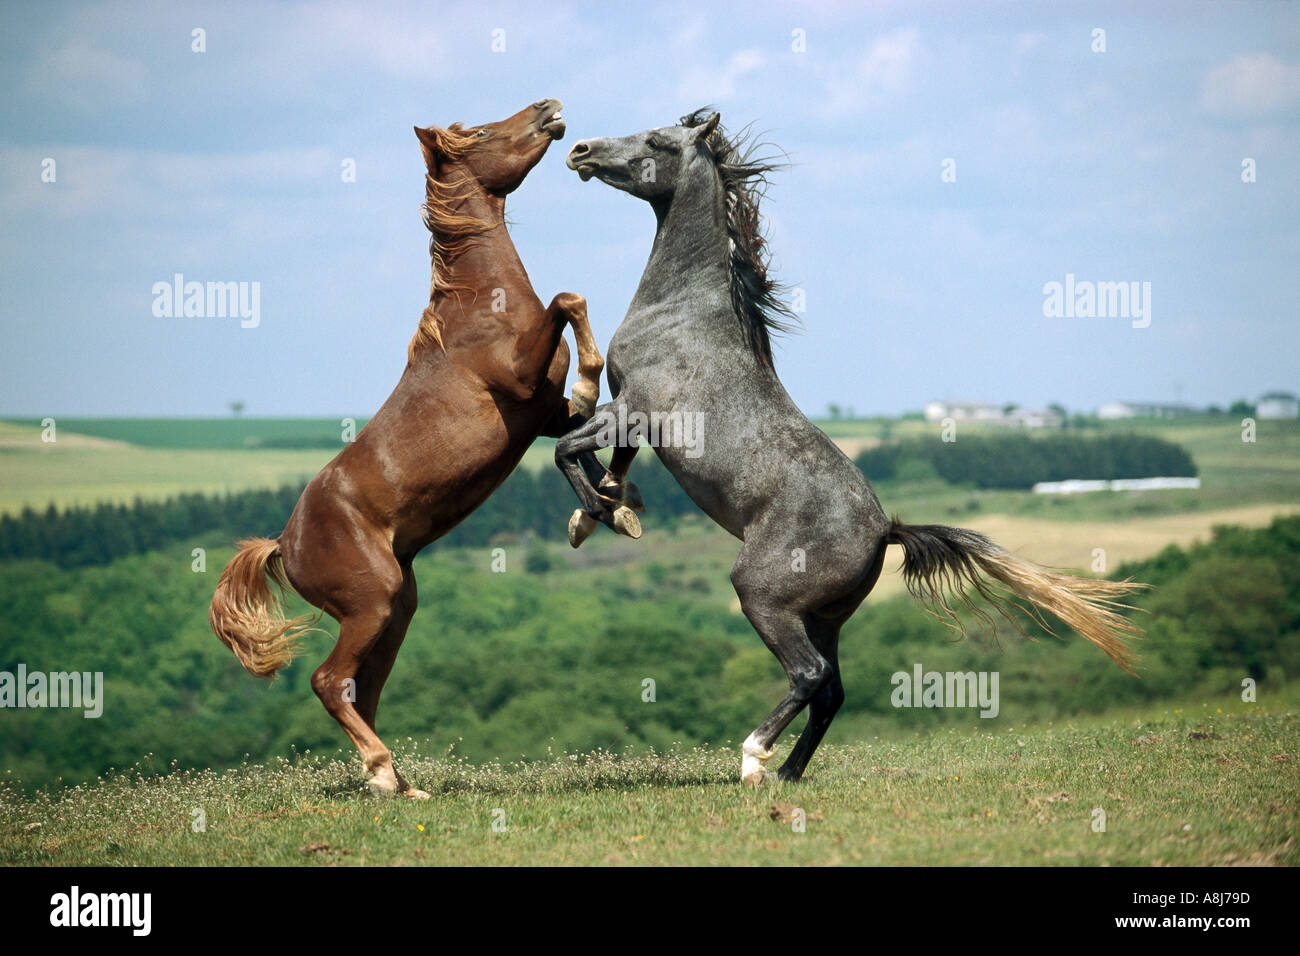 zwei arabische Pferde - Junghengste kämpfen Stockfoto